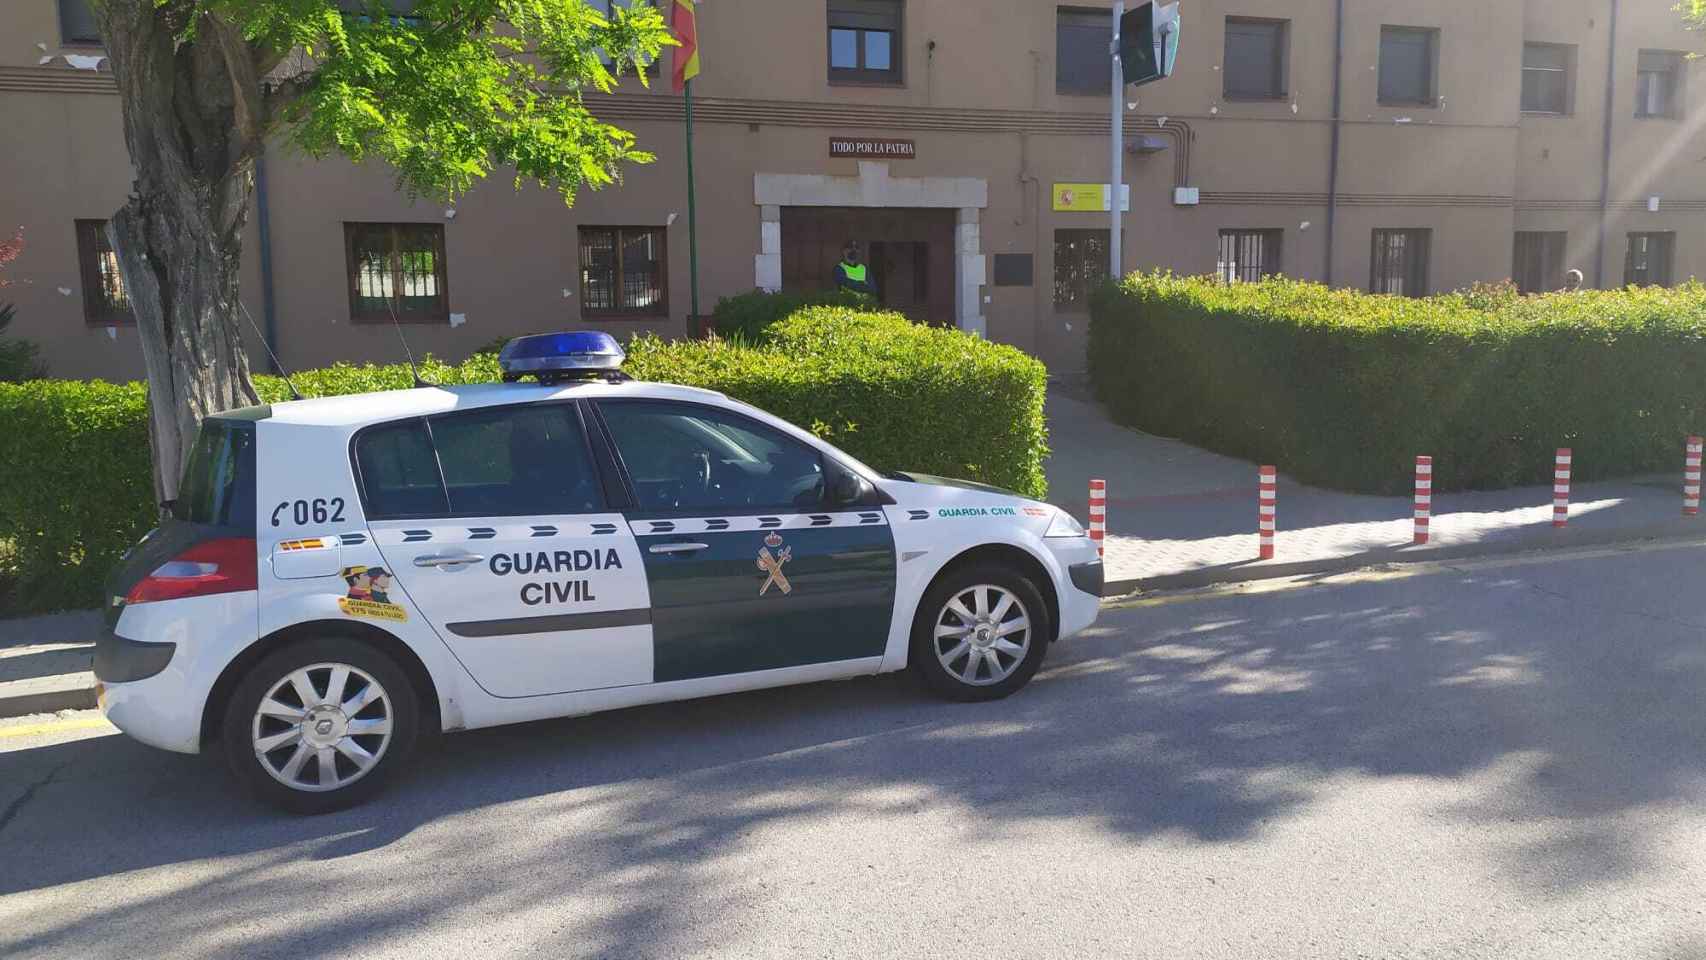 U conhe de la Guardia Civil en Soria